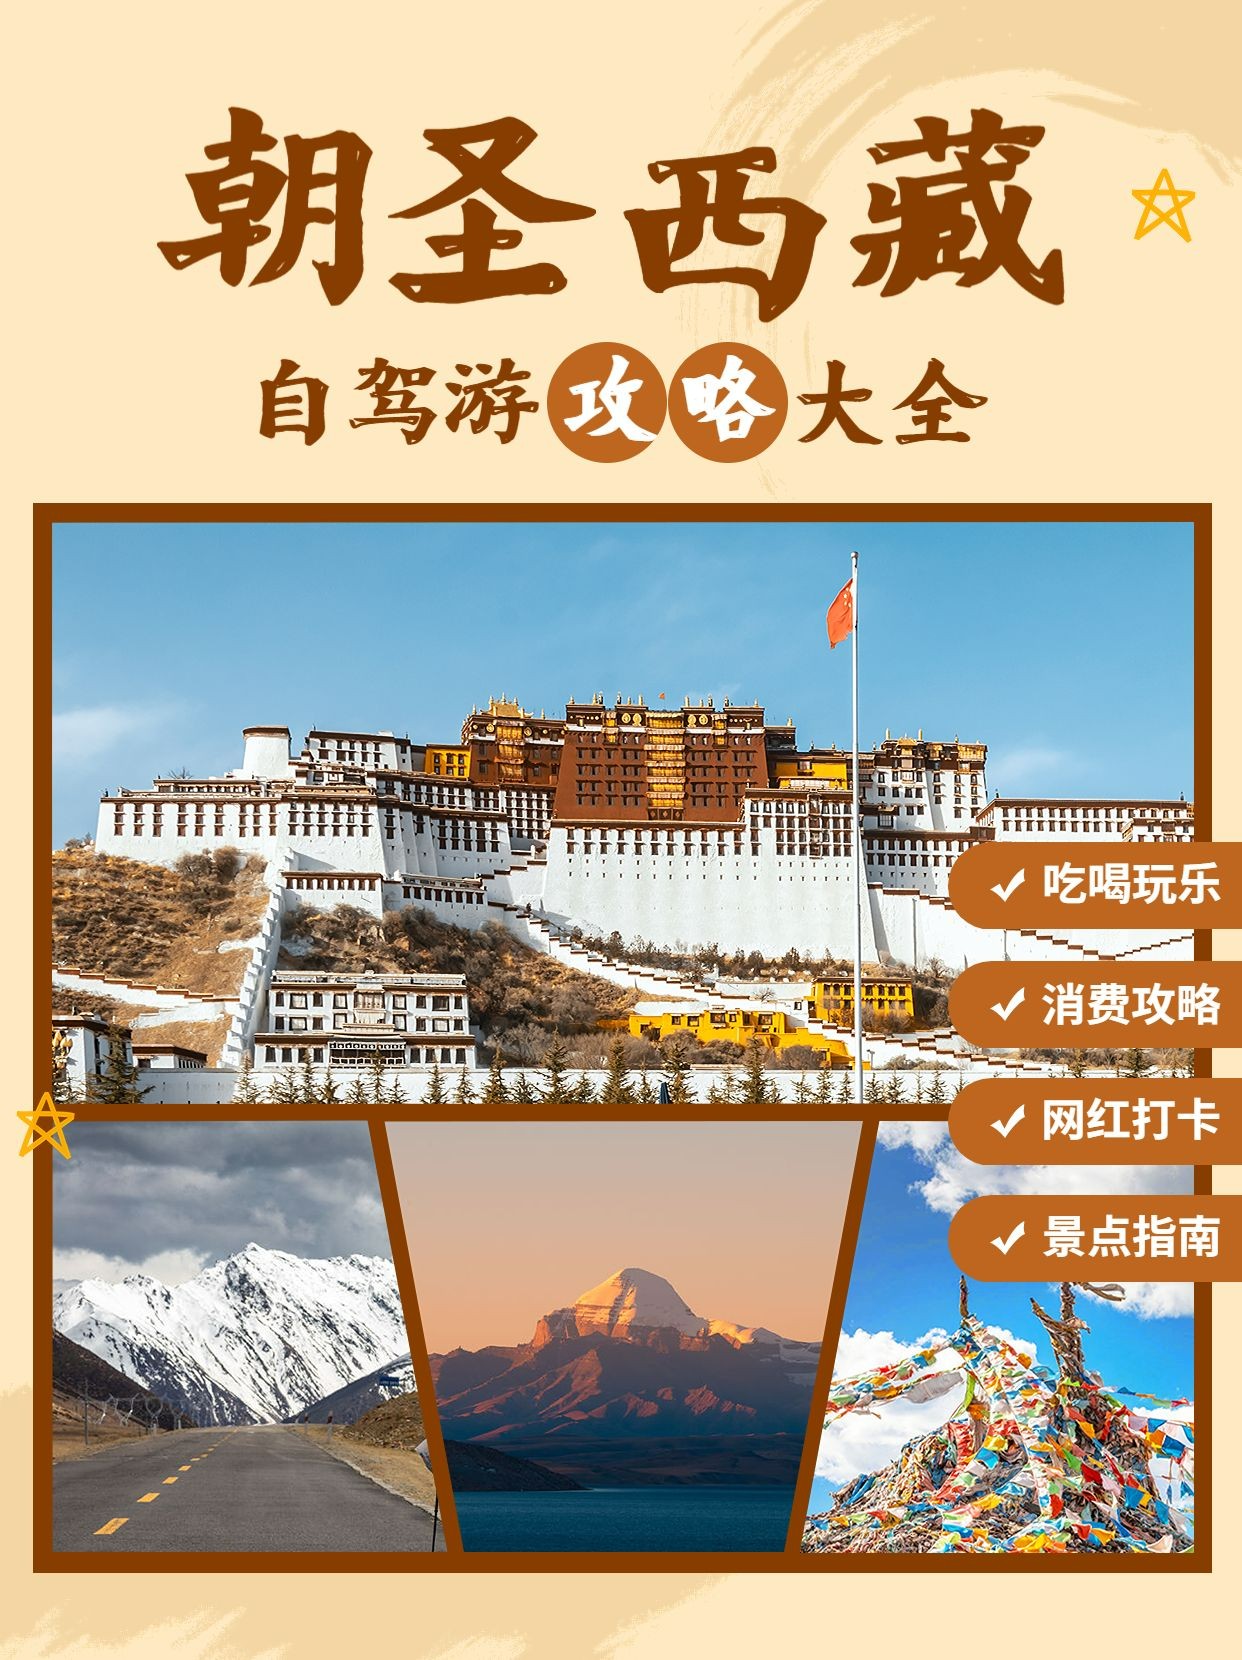 旅游出行西藏景区景点推荐小红书配图预览效果